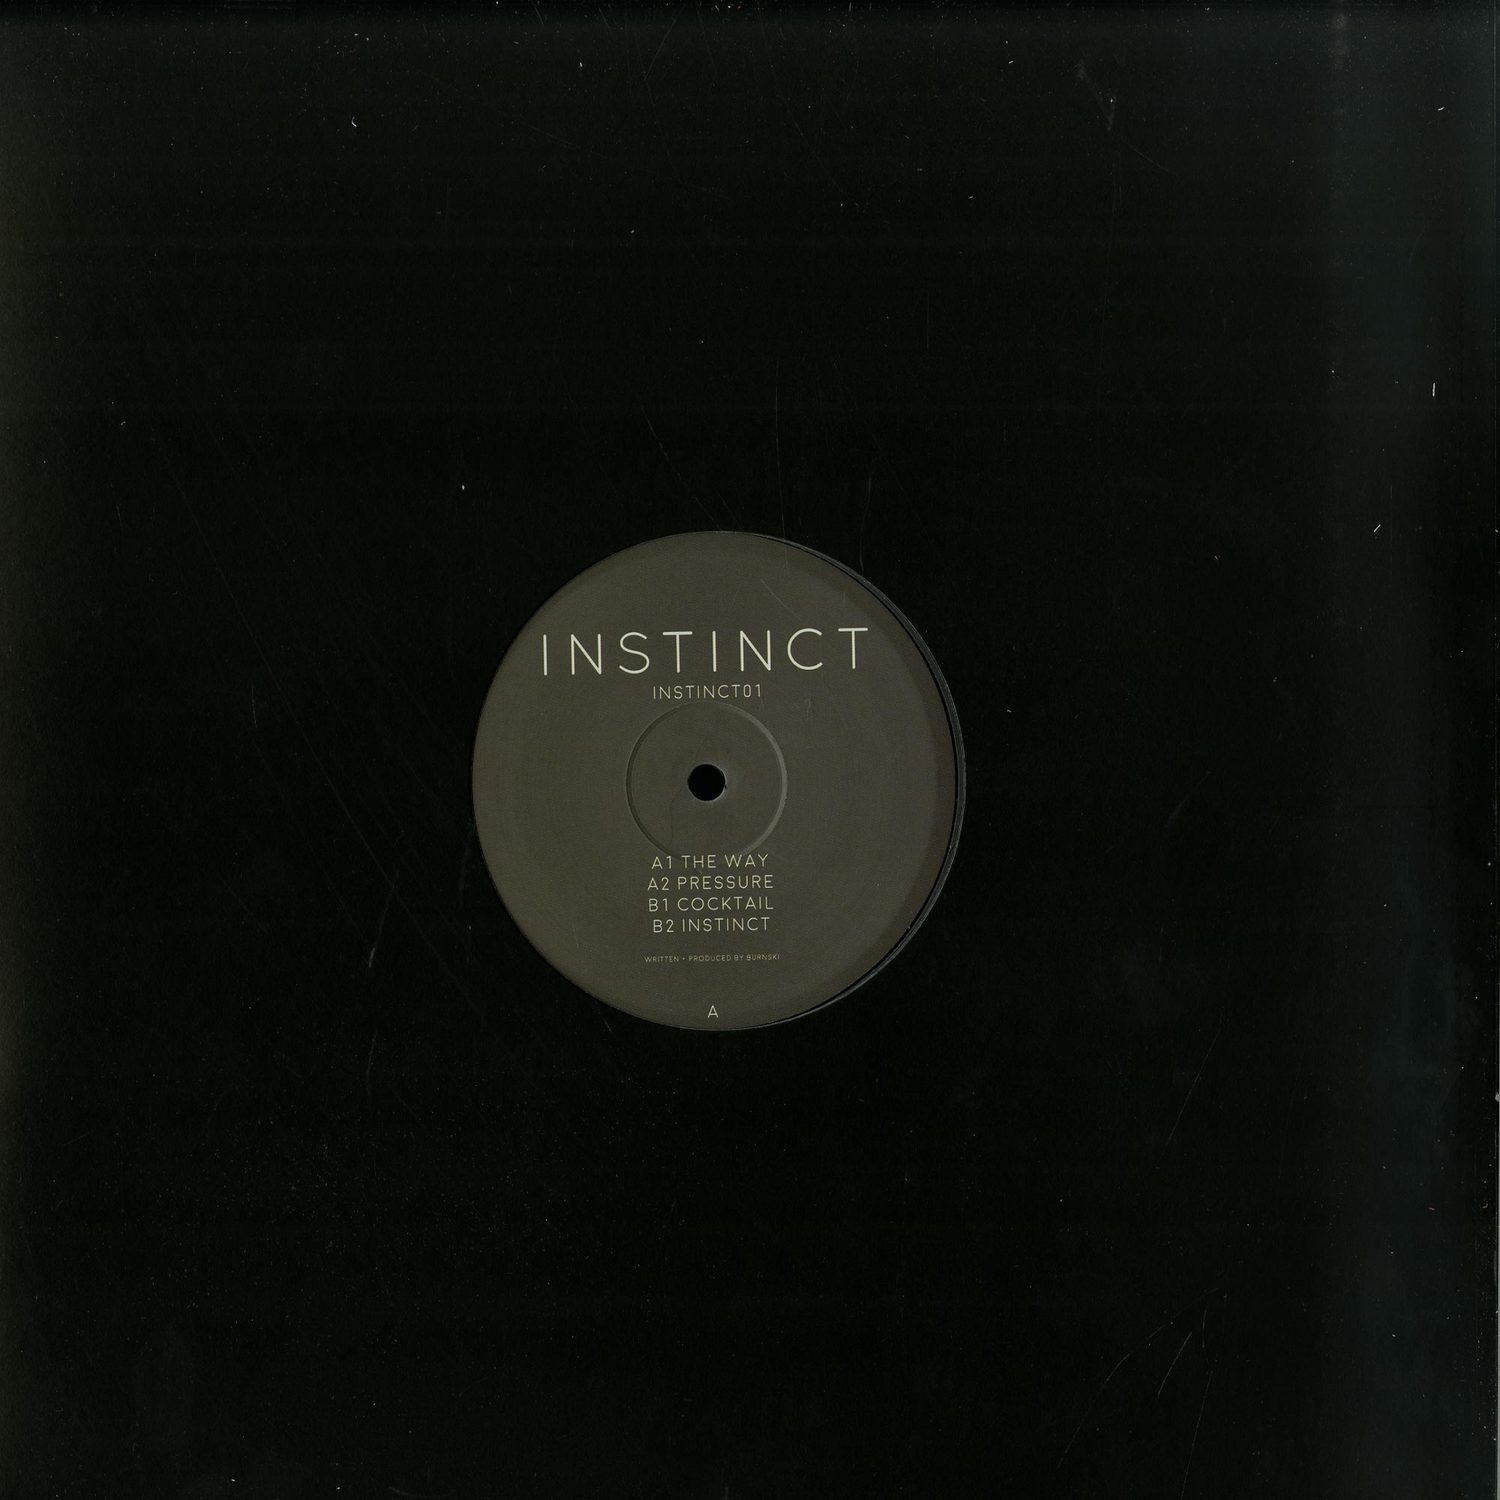 Instinct - INSTINCT 01